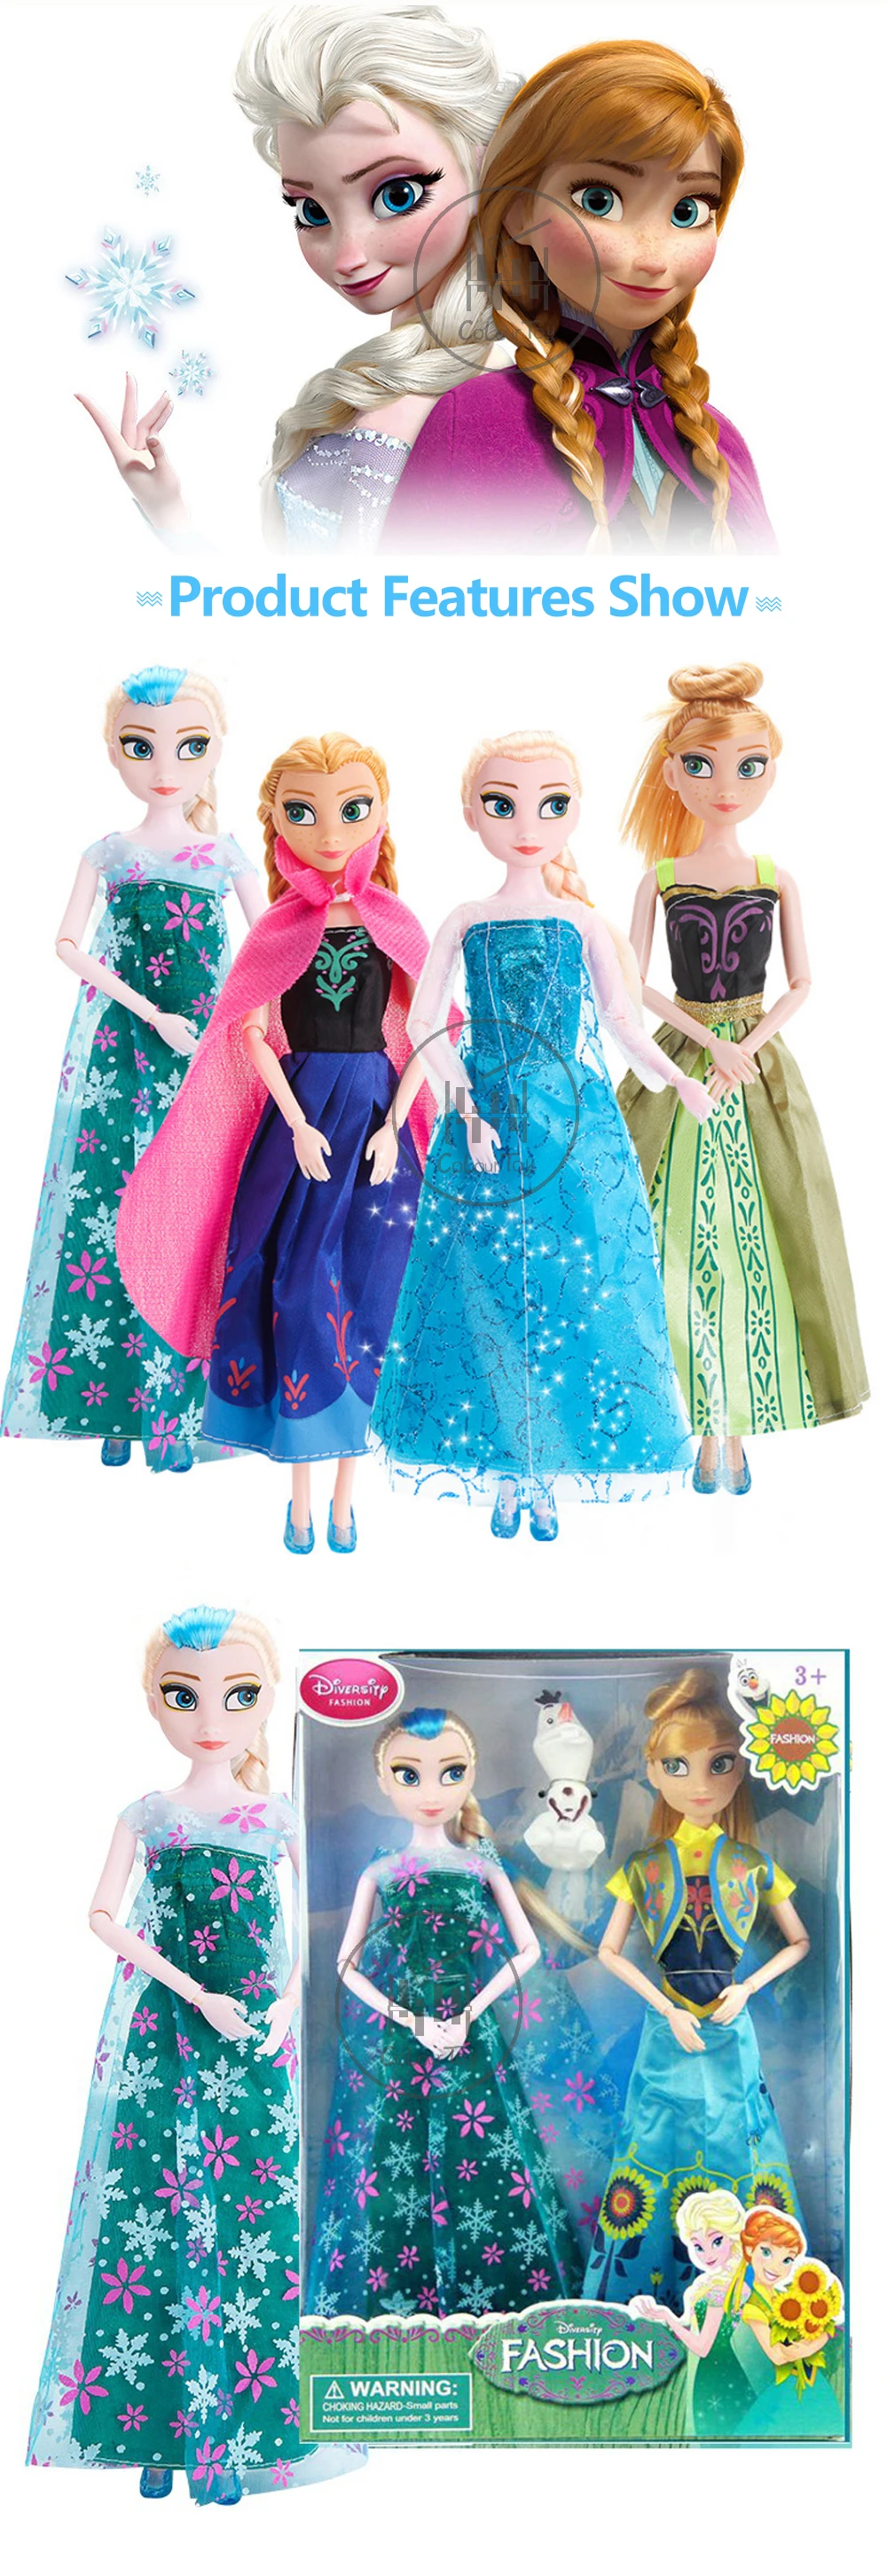 Disney Замороженные Принцесса плюшевая кукла Фея Малыш Девушка DIY игрушка Платье ручной работы до Aisha Ana прекрасная модель подарок на день рождения ребёнка